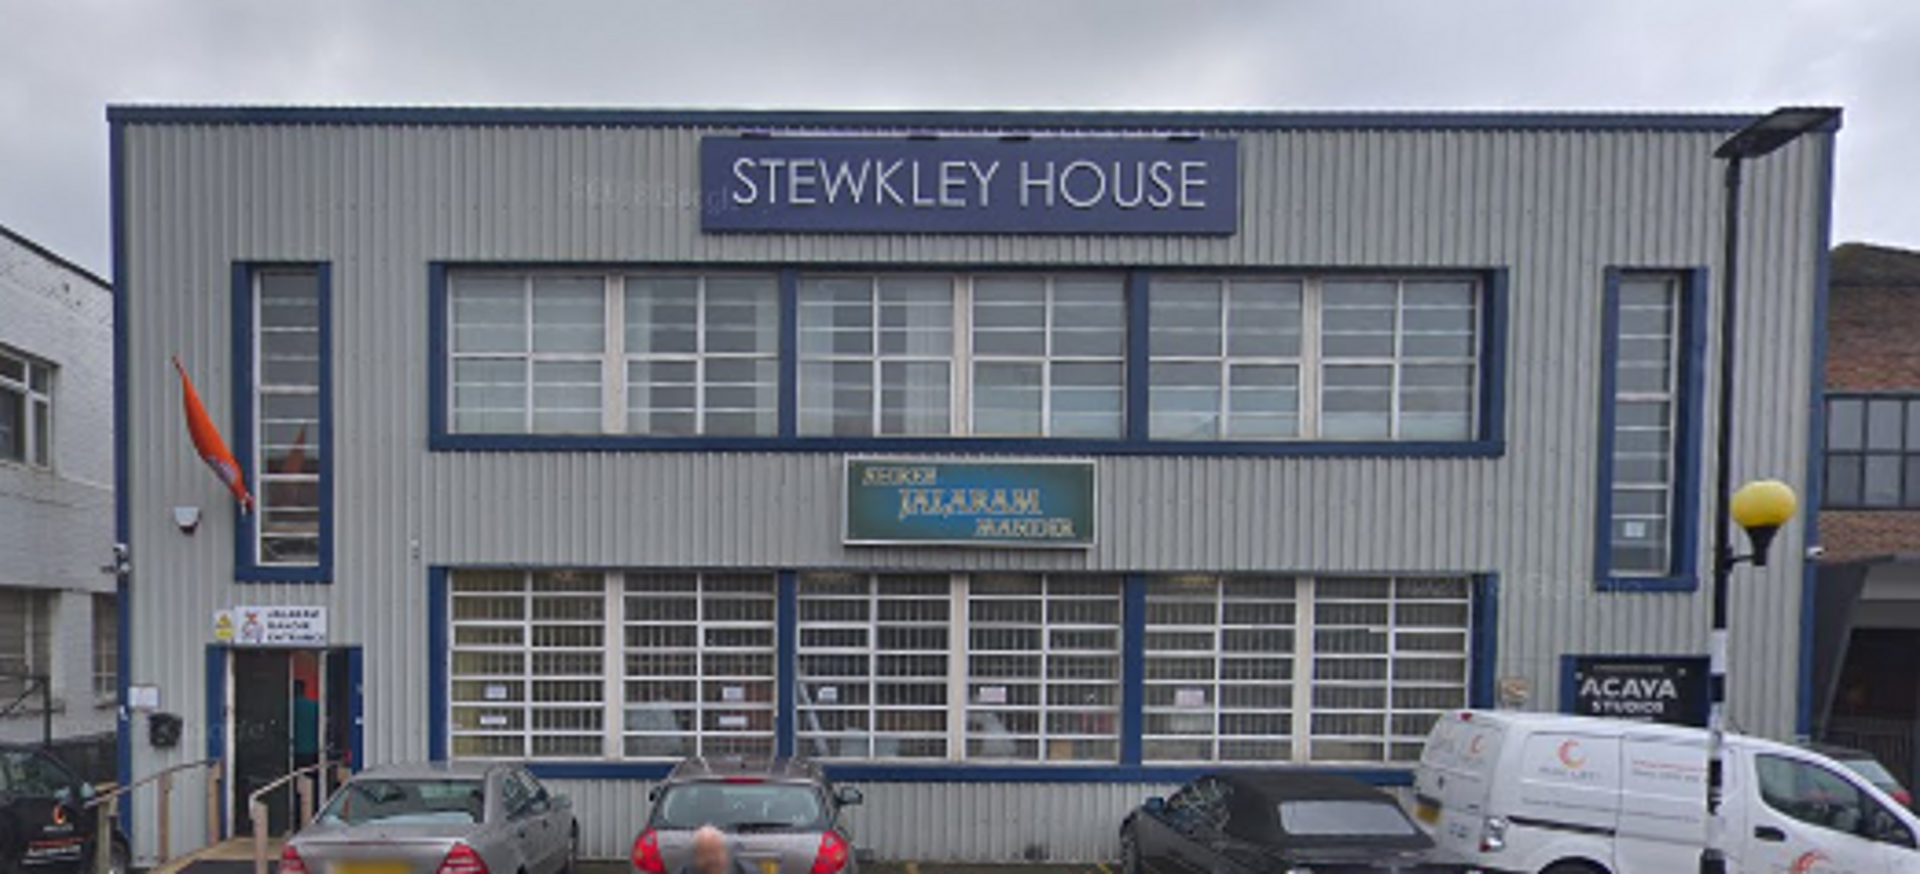 Stewkley House Courtesy of Google